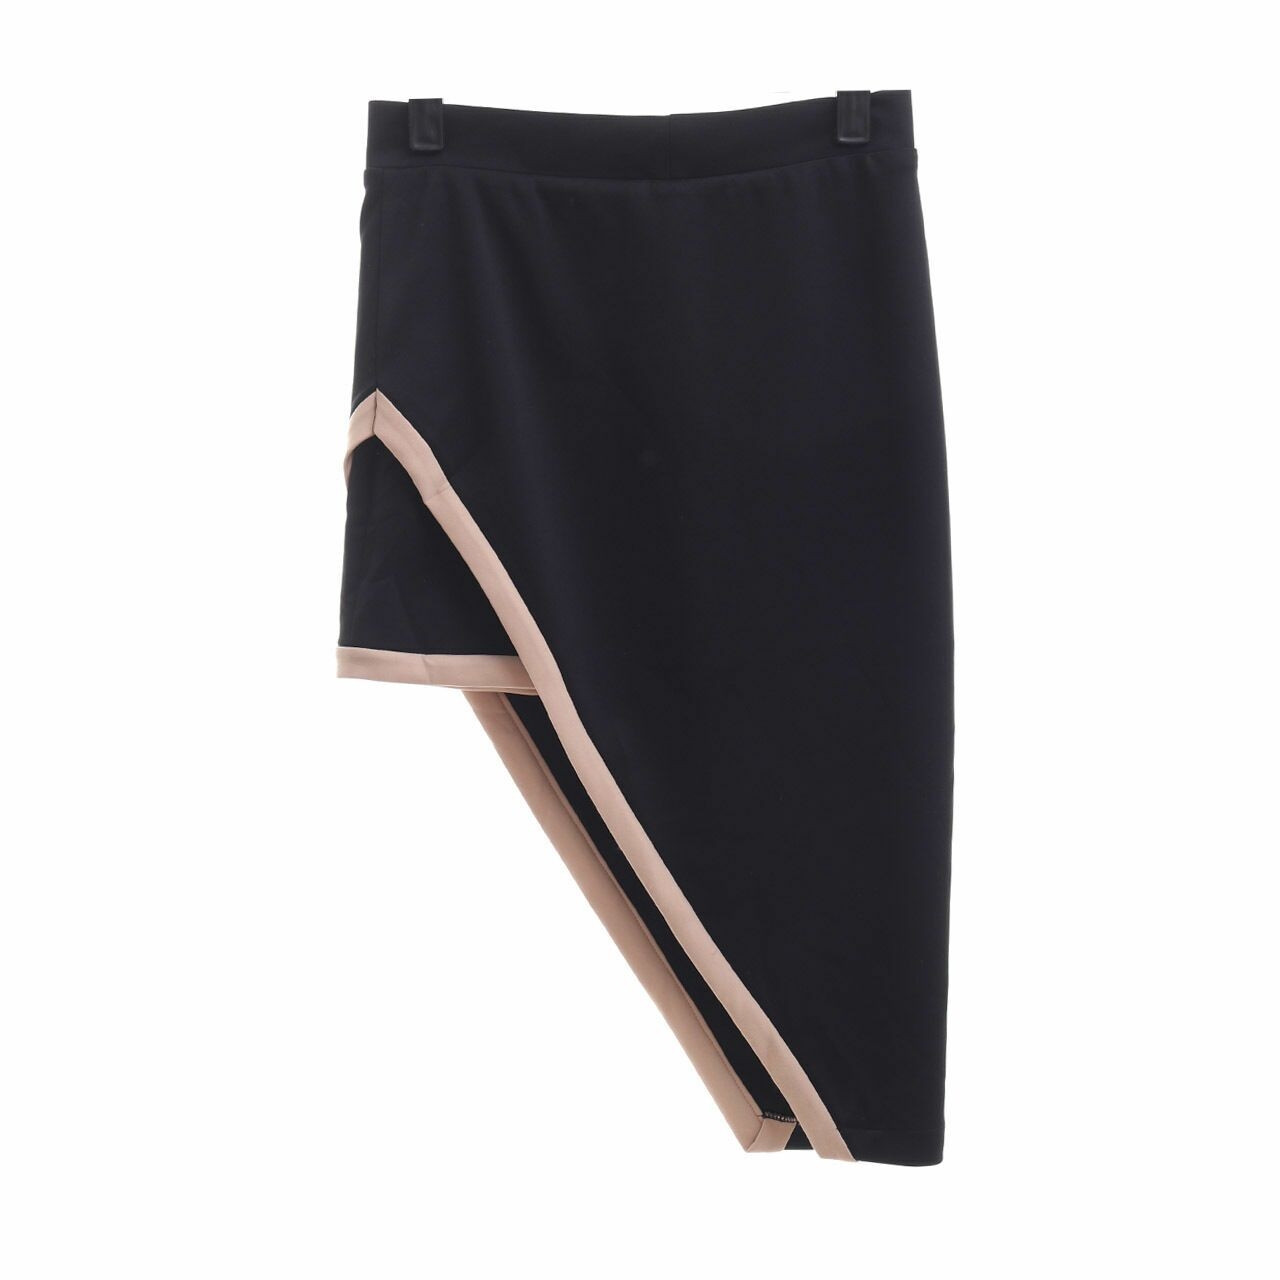 Enve Official Black Mini Skirt